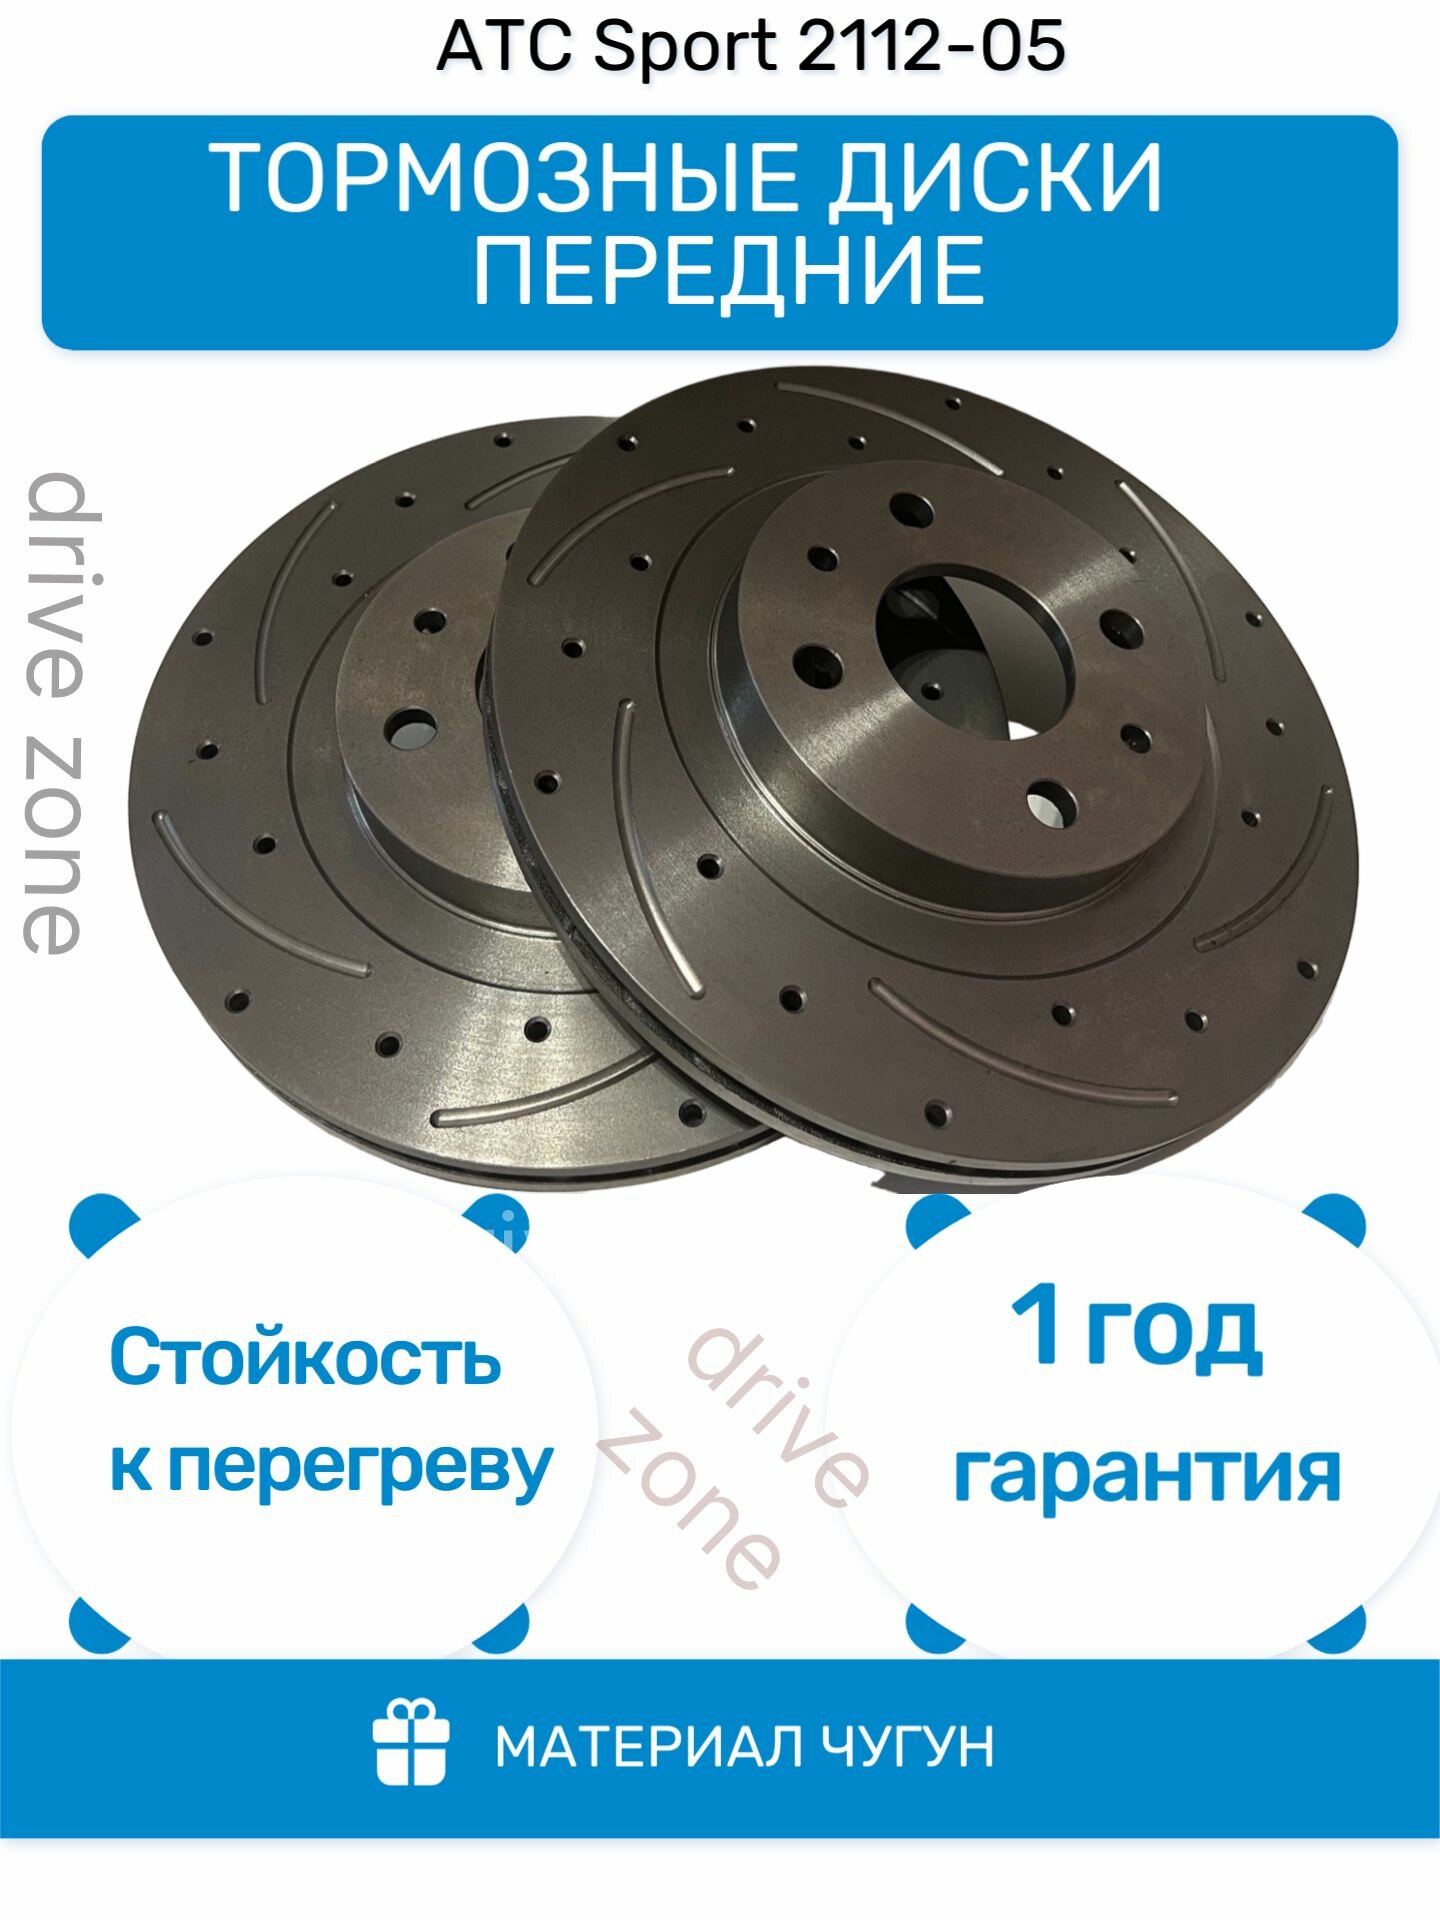 Тормозные диски передние вентилируемые АТС - SPORT 2112-05 ВАЗ-2112, Приора2170, Калина1118, Гранта2190-R14 (канавки + отверстия)